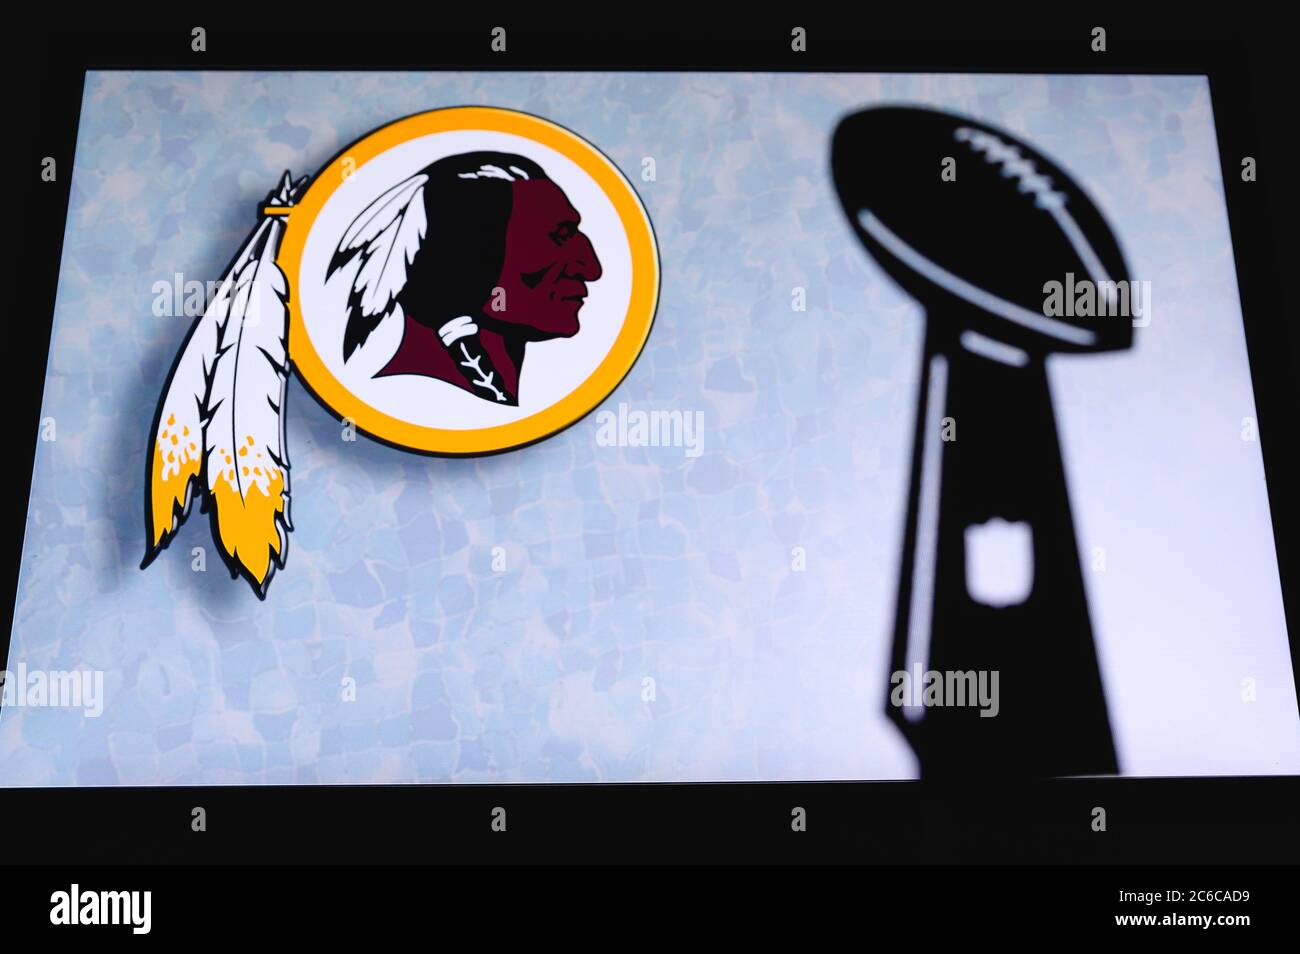 Washington Redskins profesional de fútbol americano club, silueta de la NFL trofeo, logotipo del club en el fondo. Foto de stock